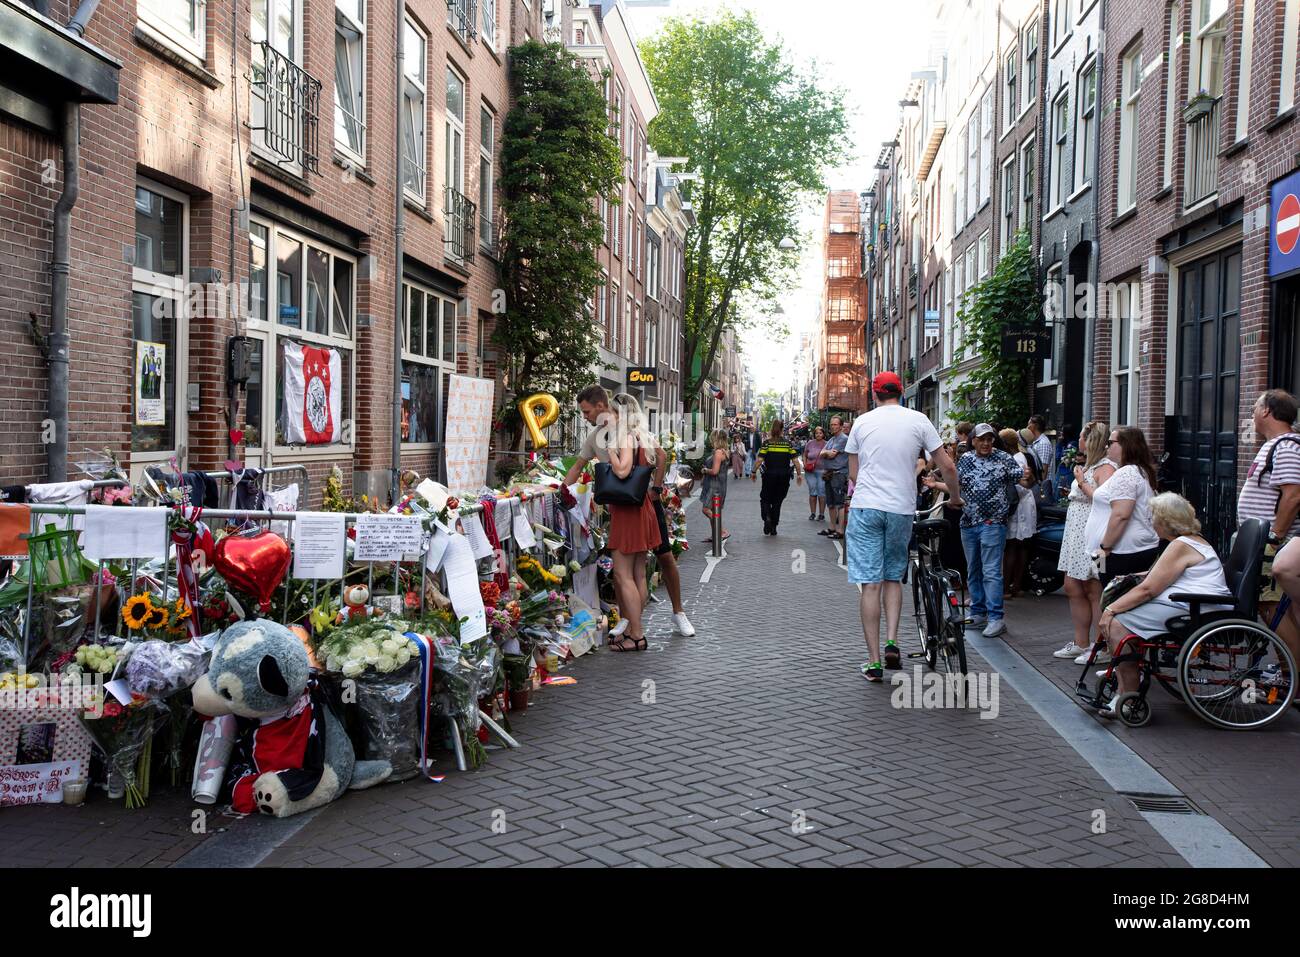 Lange Leidsedwarsstraat, South Amsterdam, pays-Bas. Dimanche 19 juillet  2021. Peter de Vries, journaliste d'investigation de crime néerlandais, 64  a été déclaré mort jeudi dernier après une fusillade quasi fatale le mardi 6